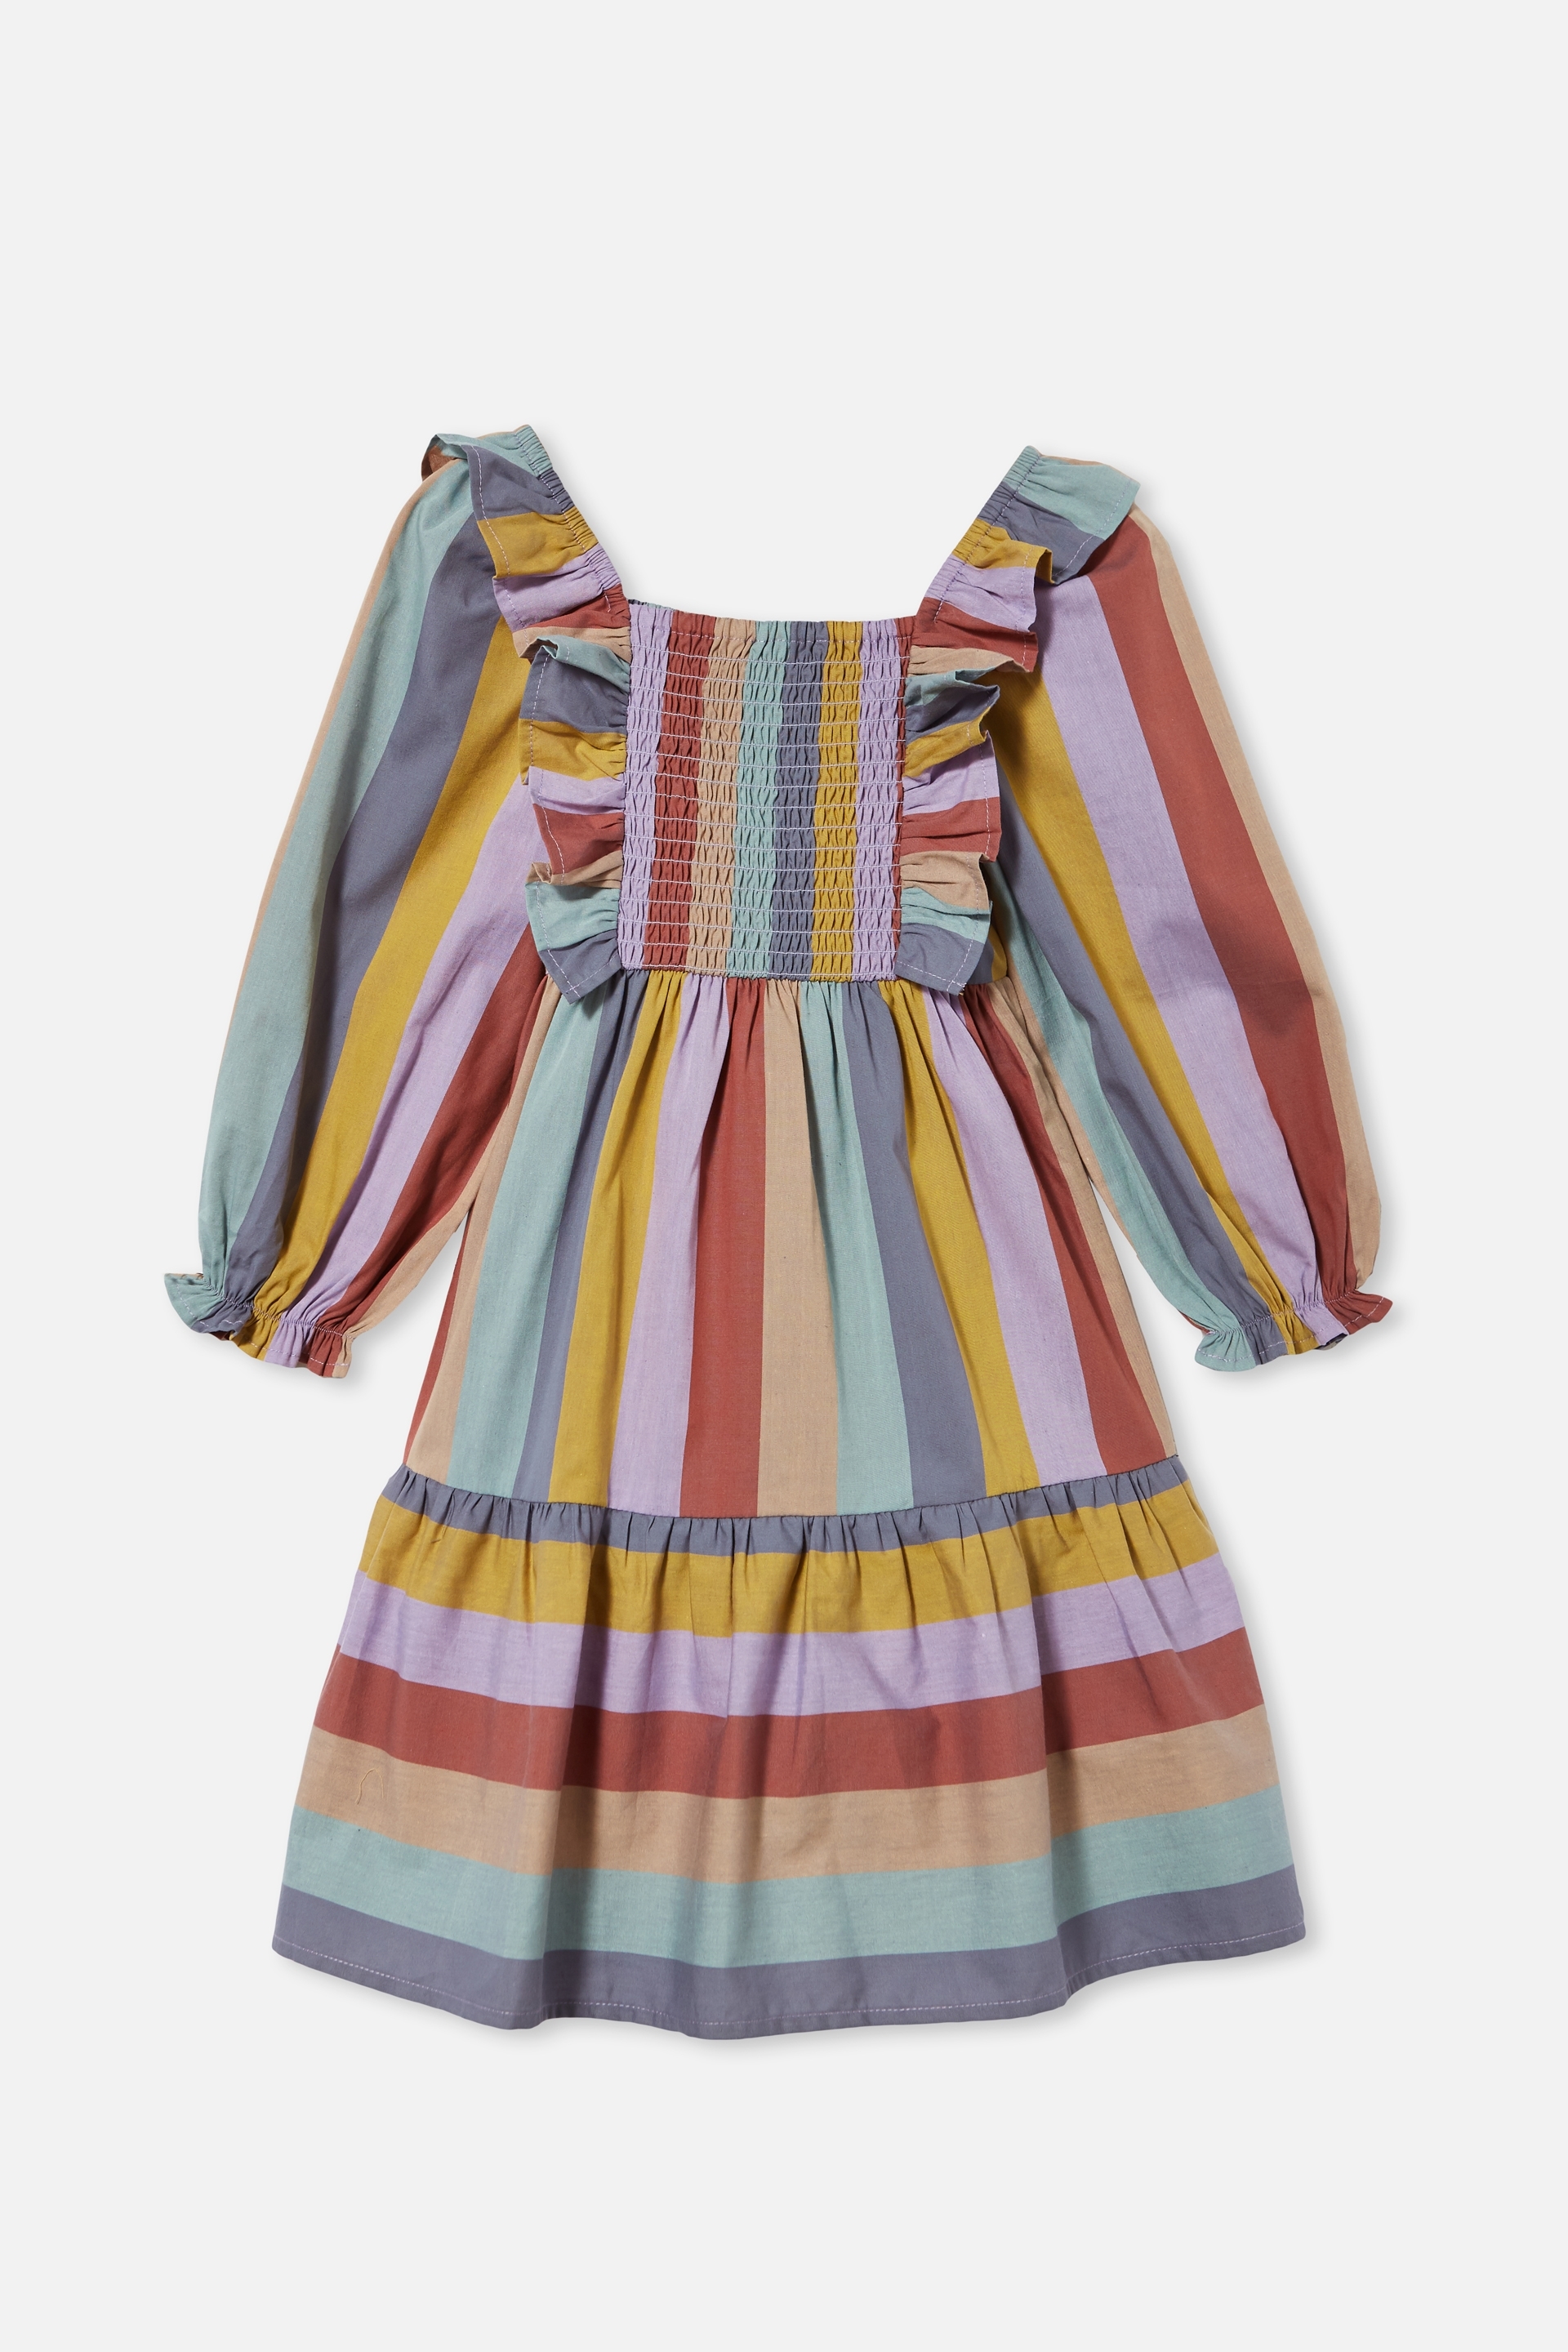 Cotton On Kids - Jenna Long Sleeve Dress - Autumn rainbow stripe